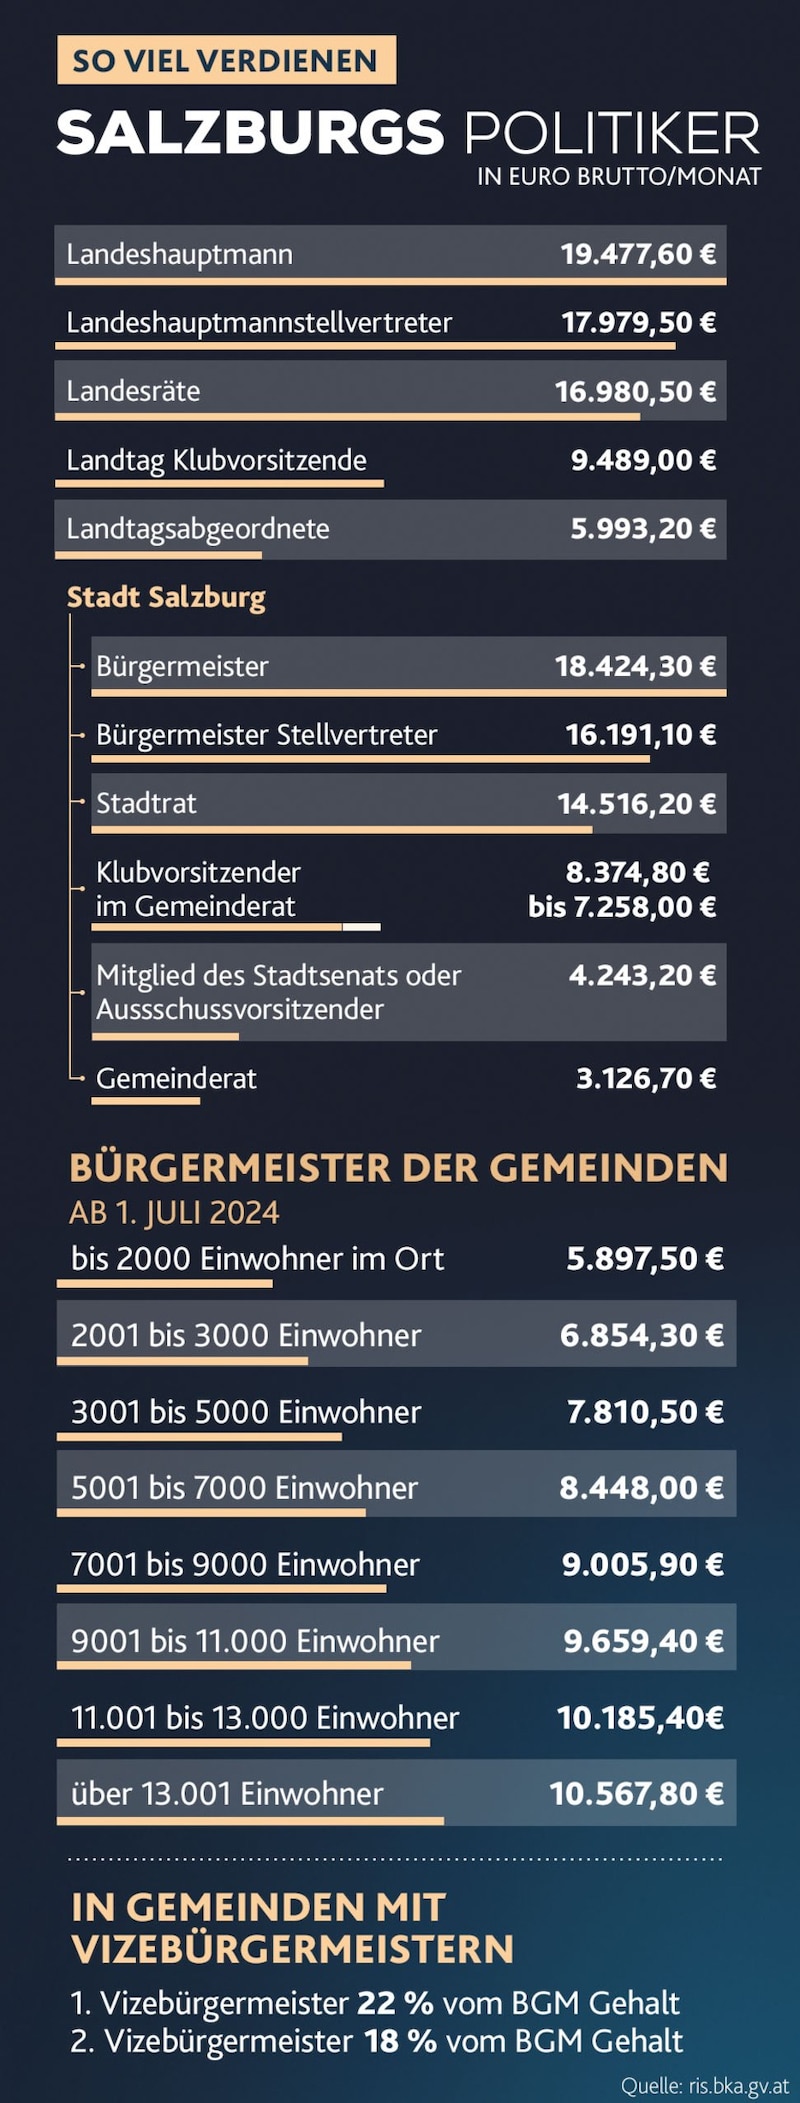 Az áttekintés: Salzburg politikusainak fizetése egy pillantásra. (Bild: Krone KREATIV/Adobe Stock)